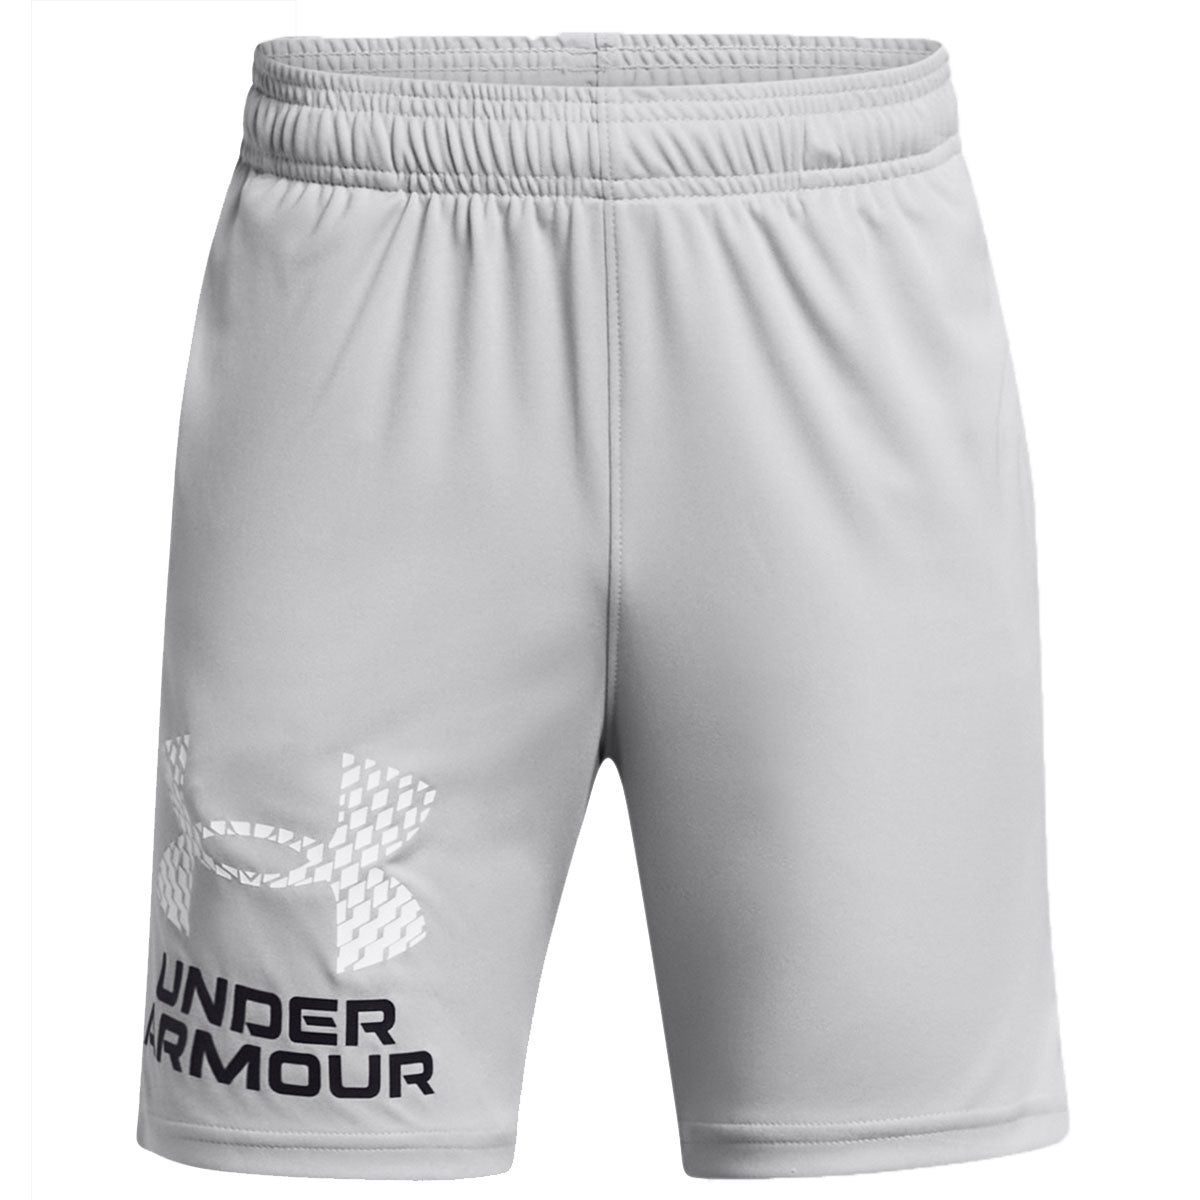 Under Armour Tech Logo Shorts - Boys - Mod Grey/White